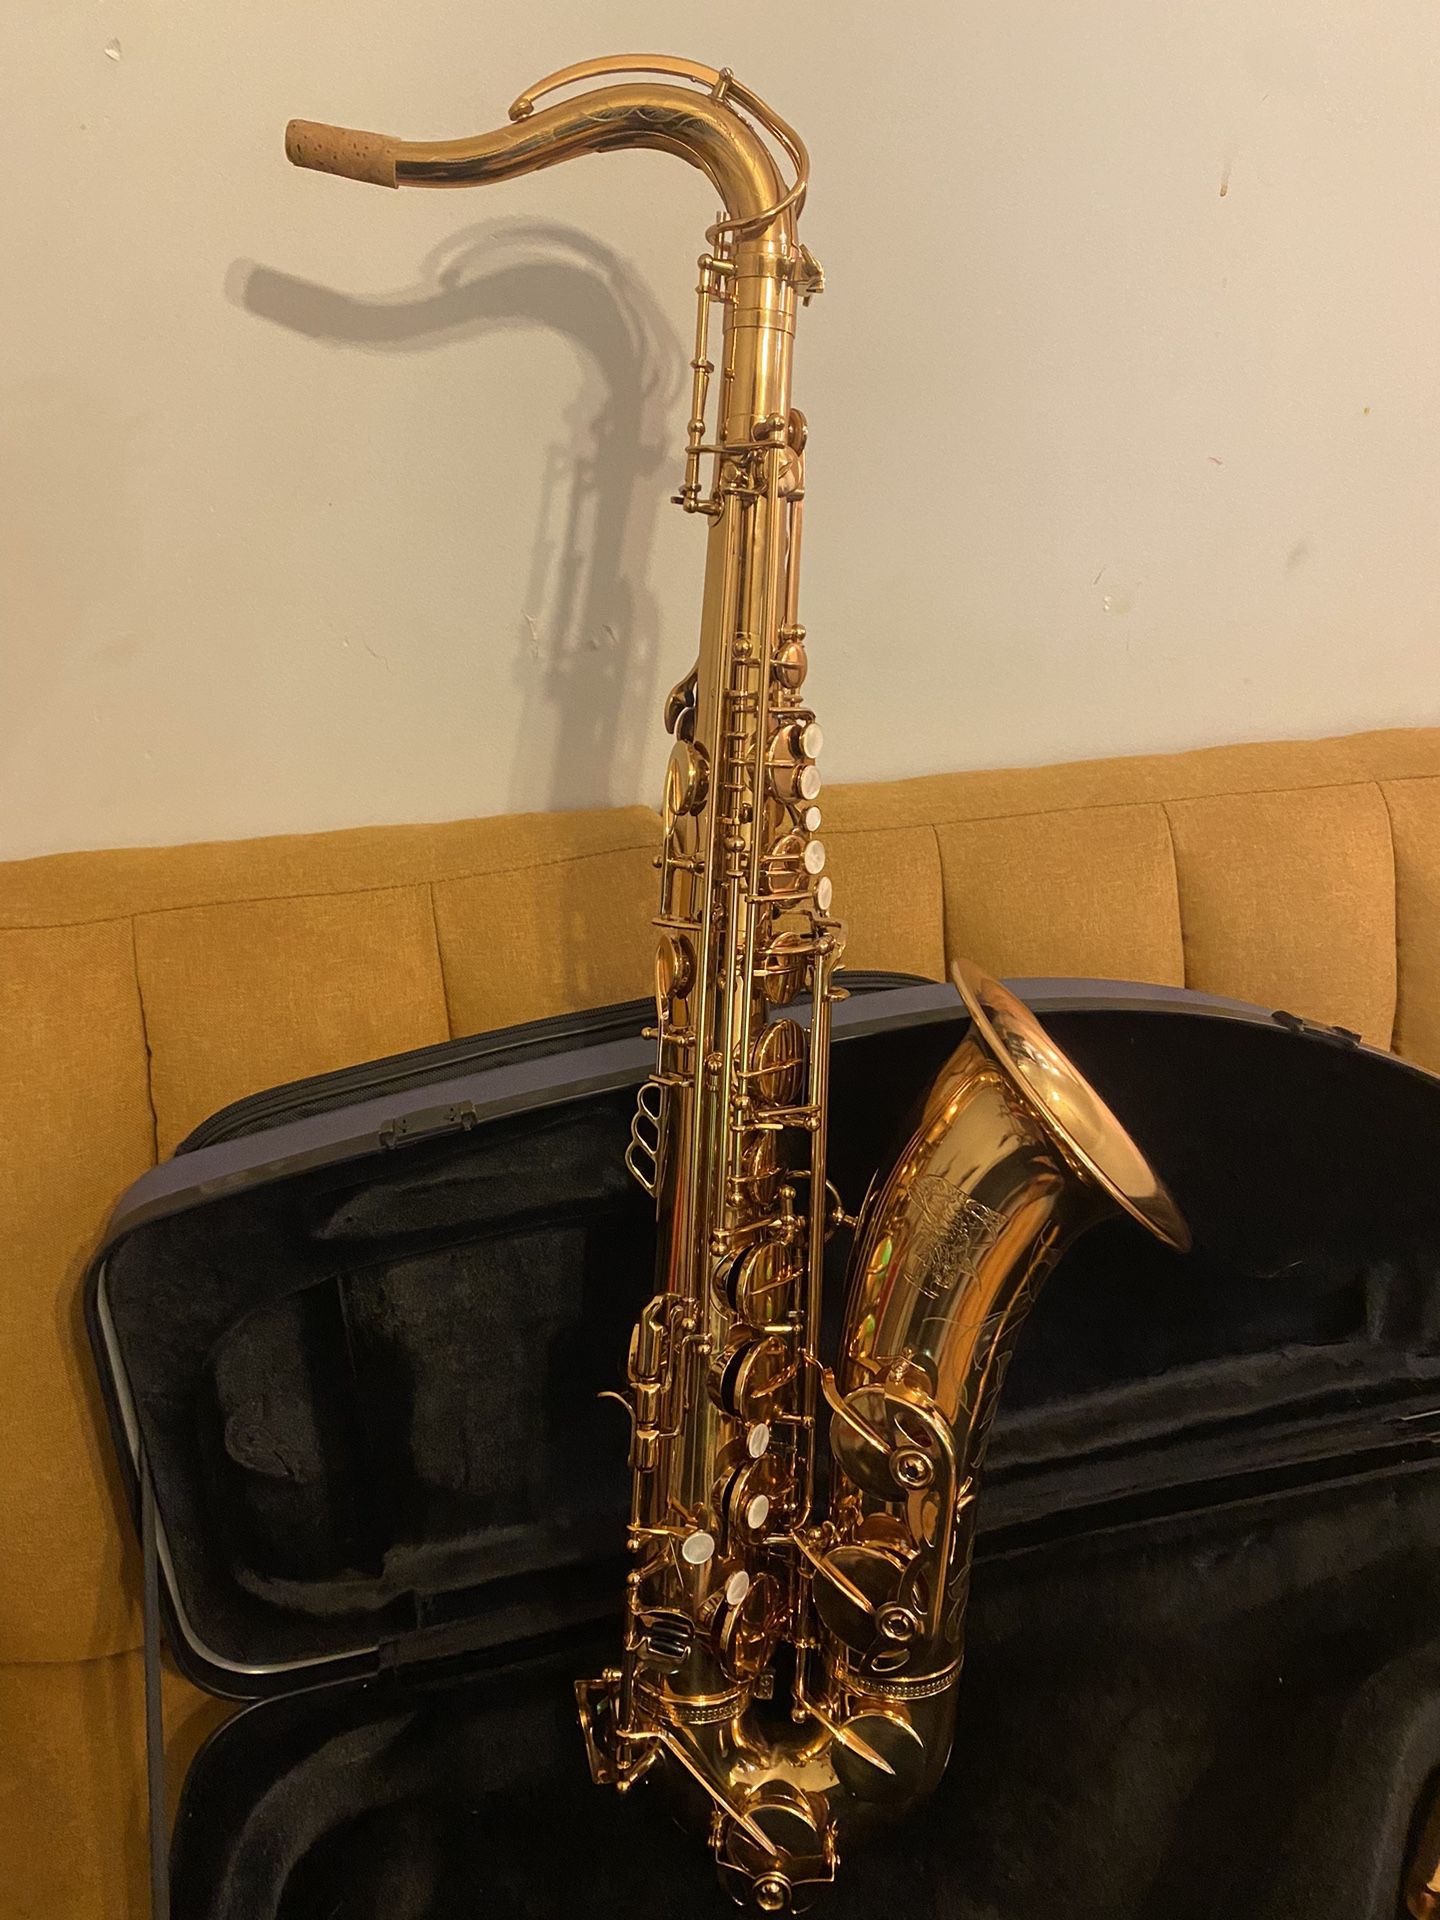 Eastern Woodwinds Tenor Saxophone 